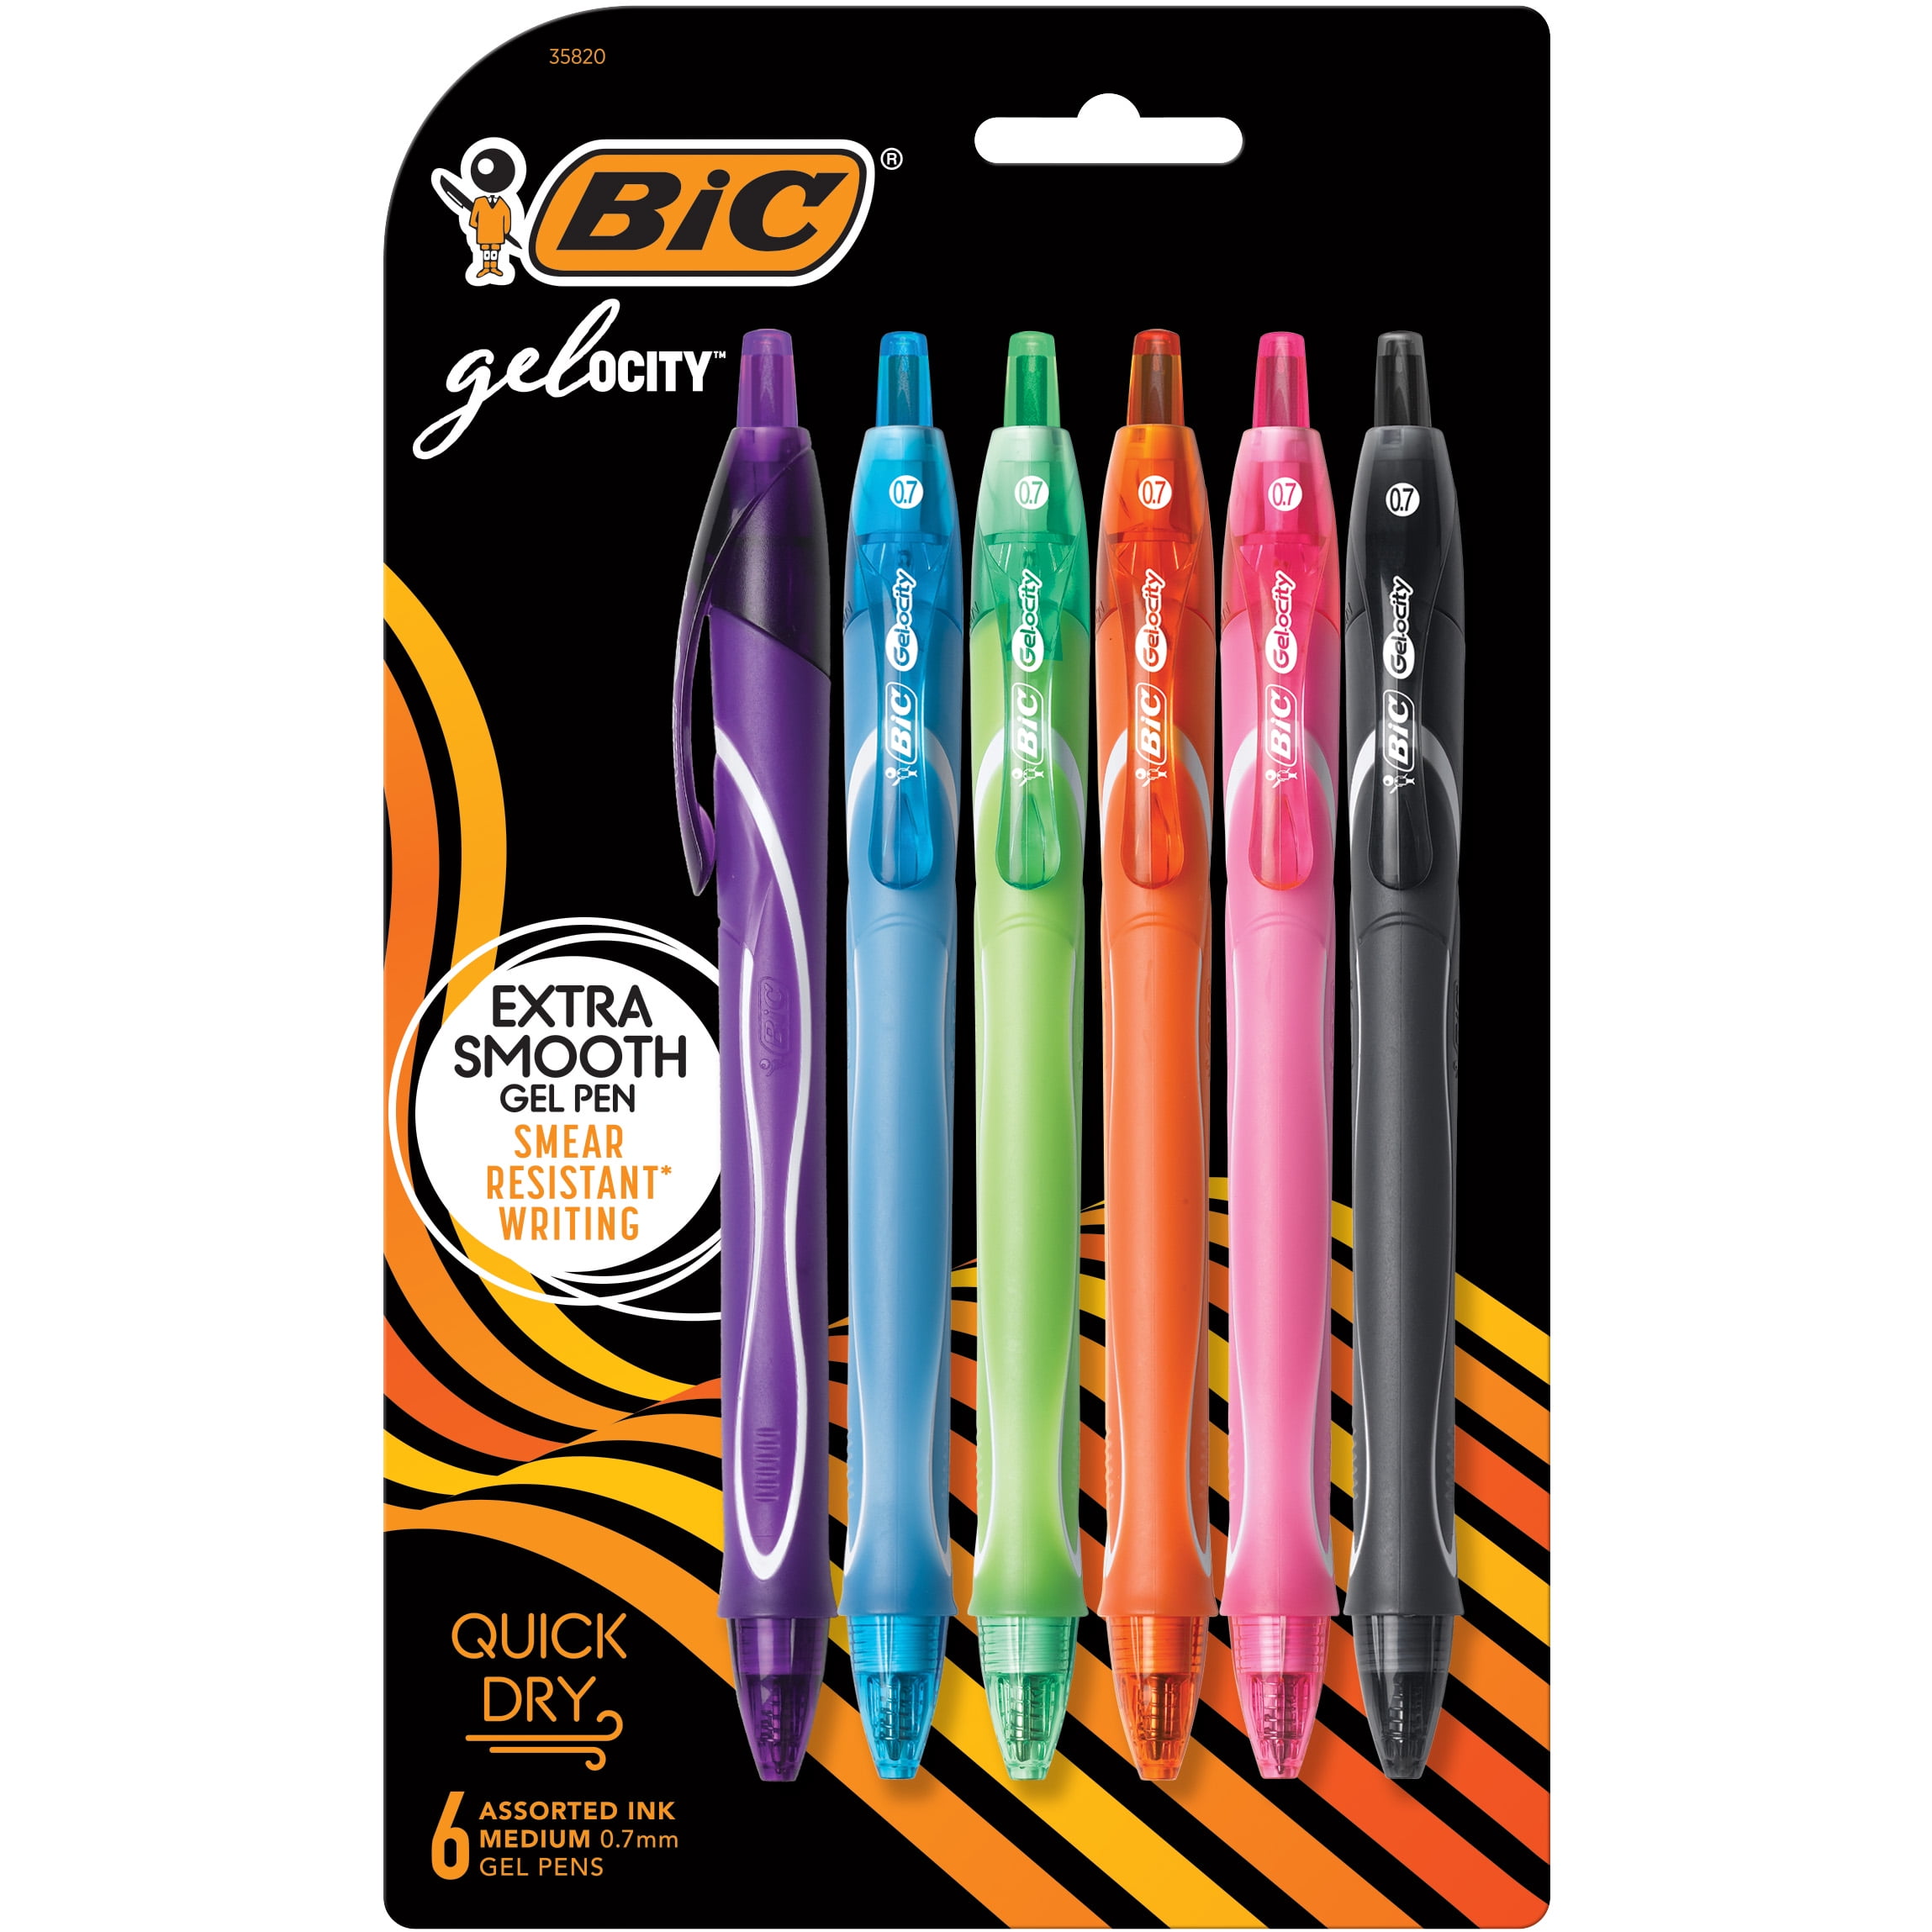  Mr. Pen- No Bleed Gel Highlighter, 16 Pcs (8 Pastel